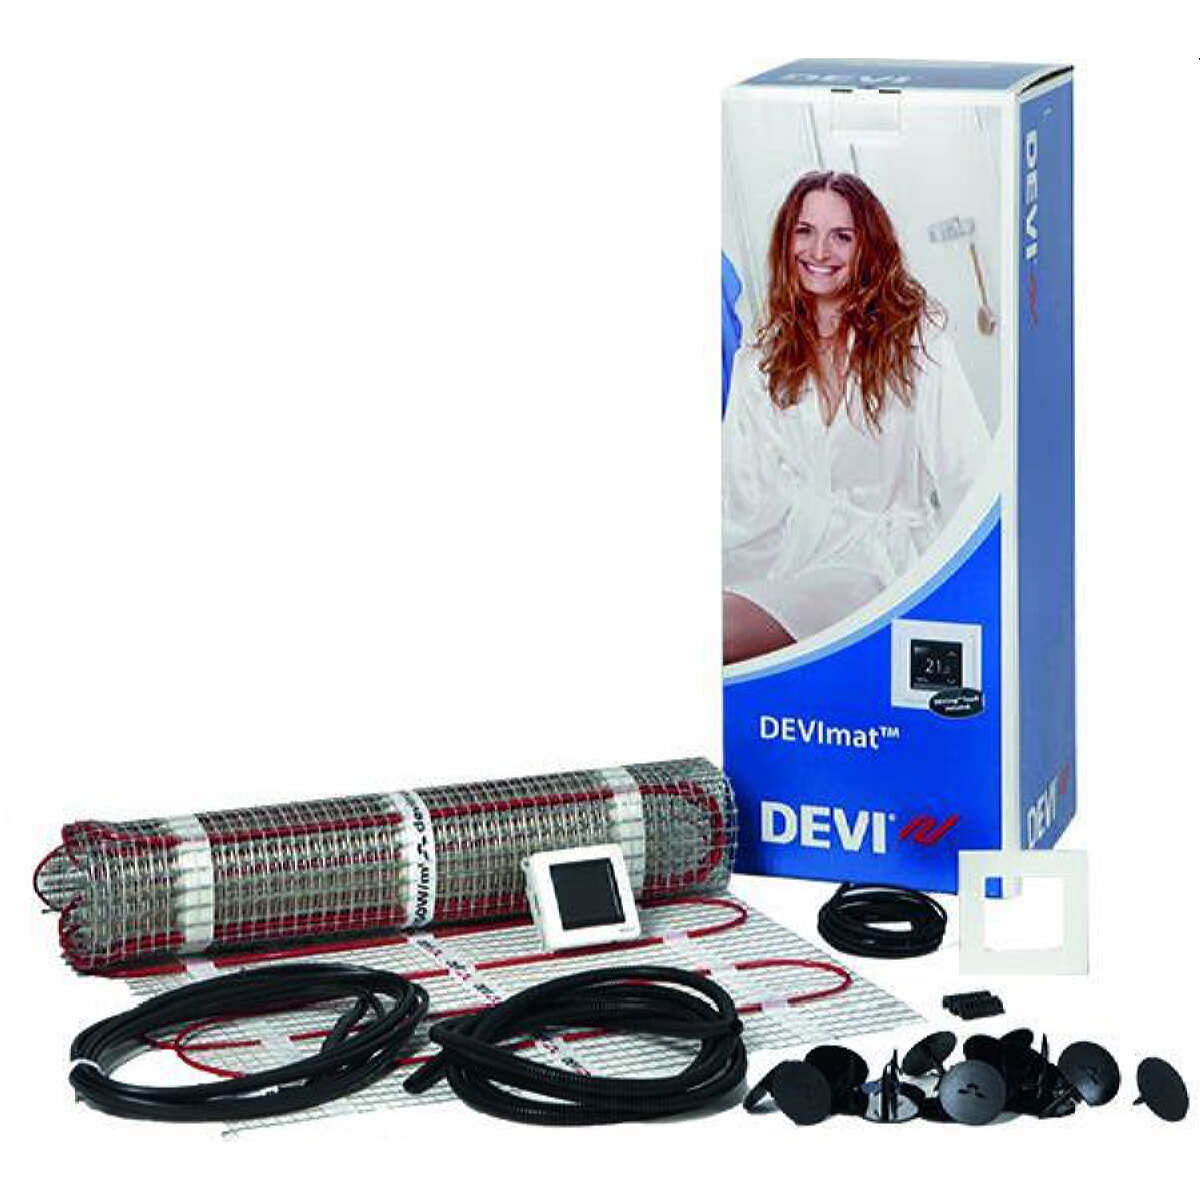 DEVI Dünnbett-Set mit Devireg Touch 750 W professional DTIF 5,0 qm 140F0823